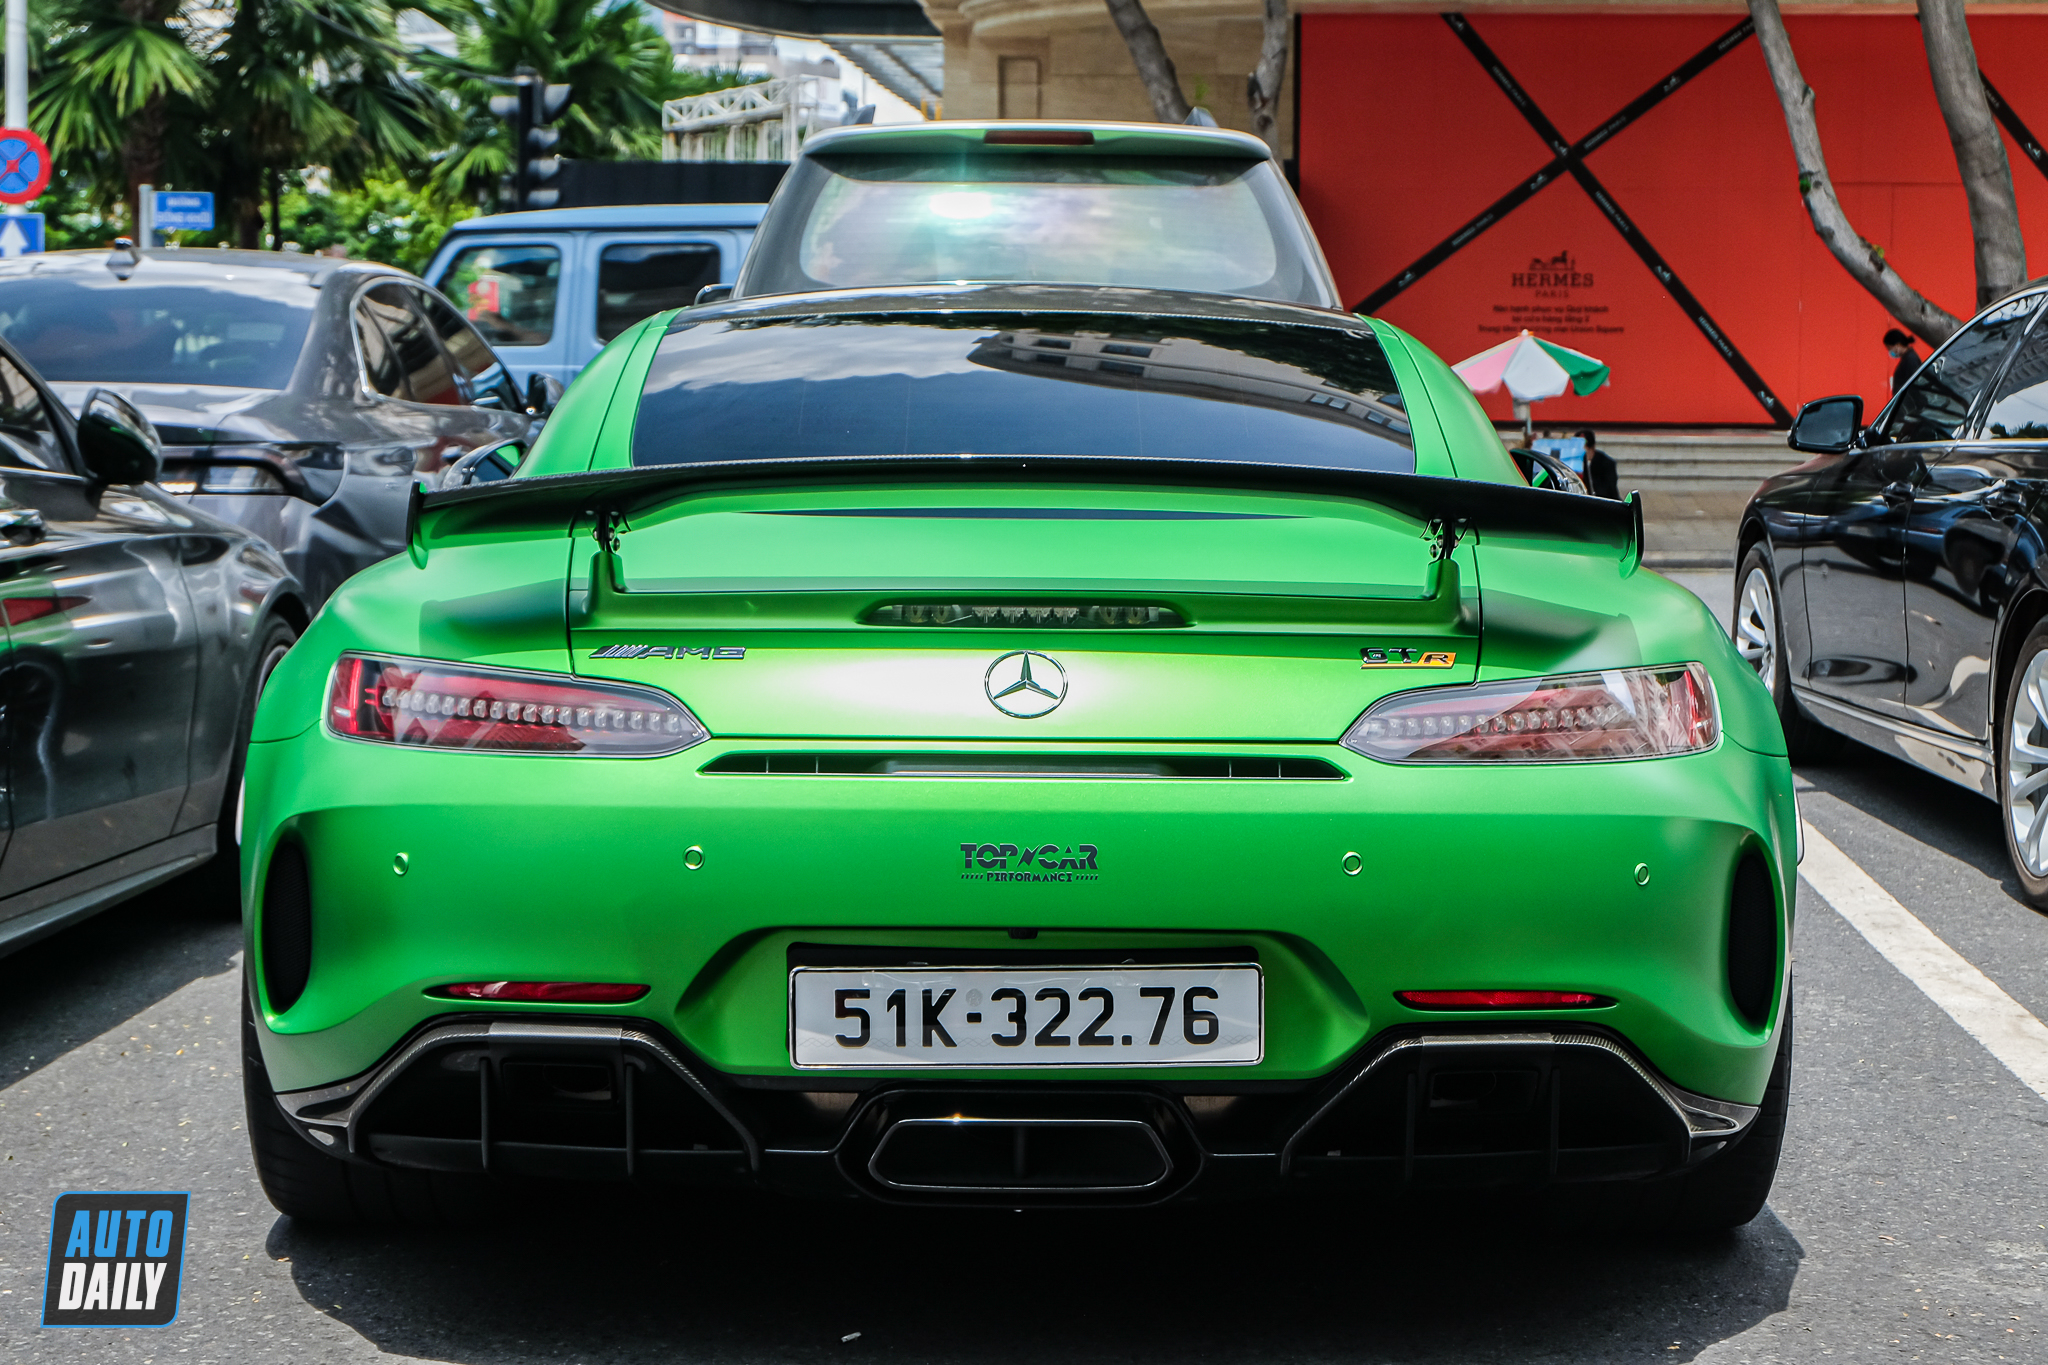 Bắt gặp Mercedes-AMG GT R giá hơn 16 tỷ, màu sơn dễ nhầm chiếc của Qua Vũ mercedes-amg-gtr-autodaily-13.JPG